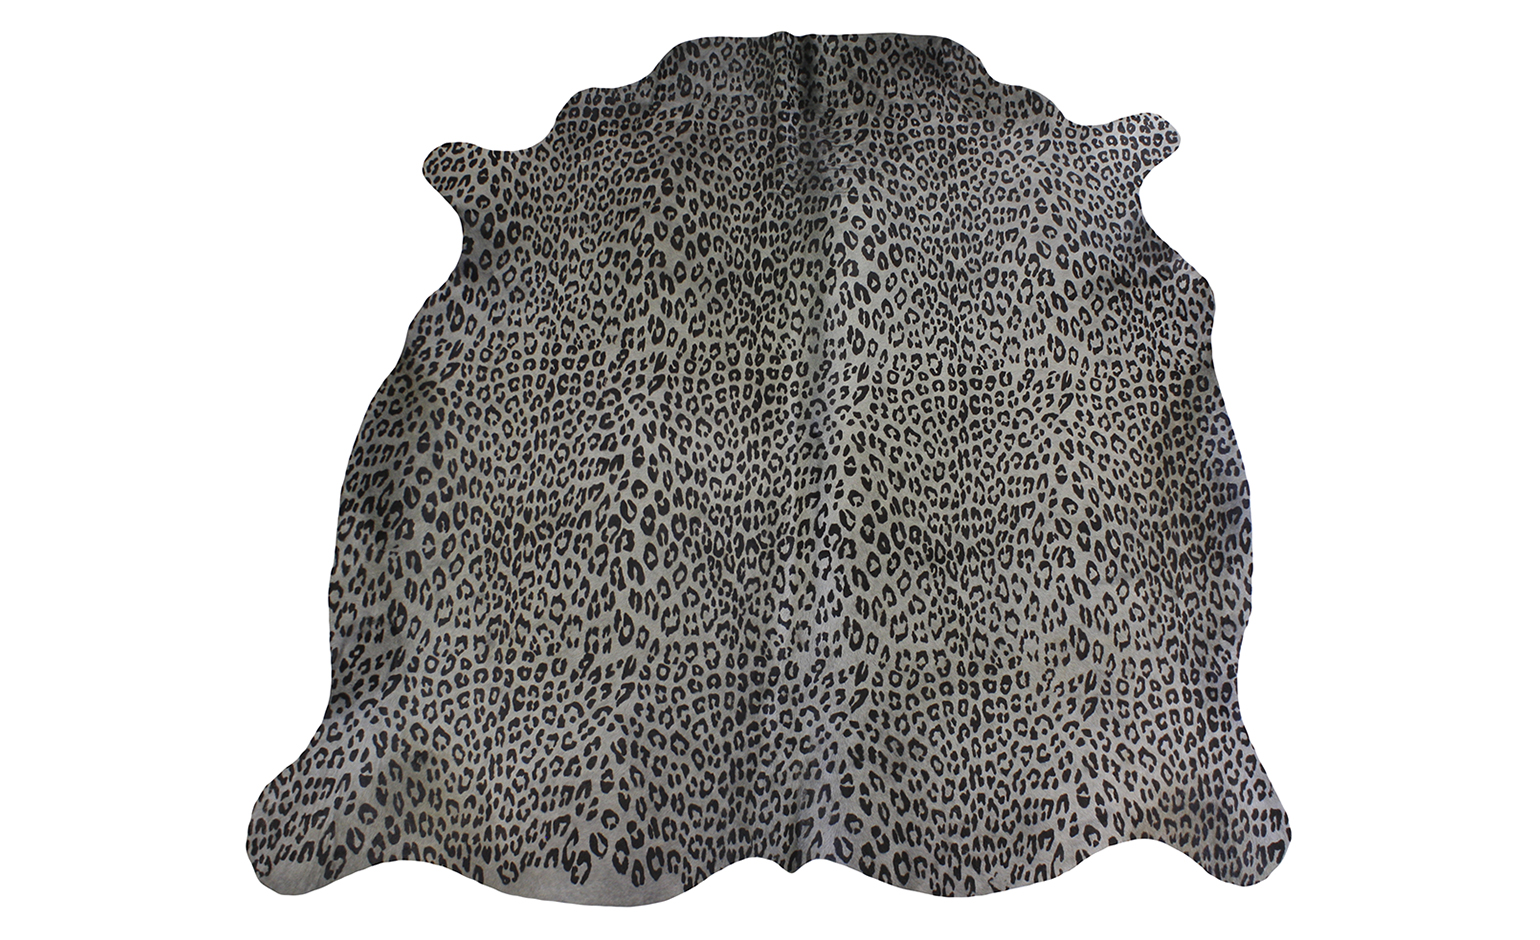 Tapis IMPRIME PANTHERE Tergus, peau de bête  gris, dim 1.90 x 2.10 m